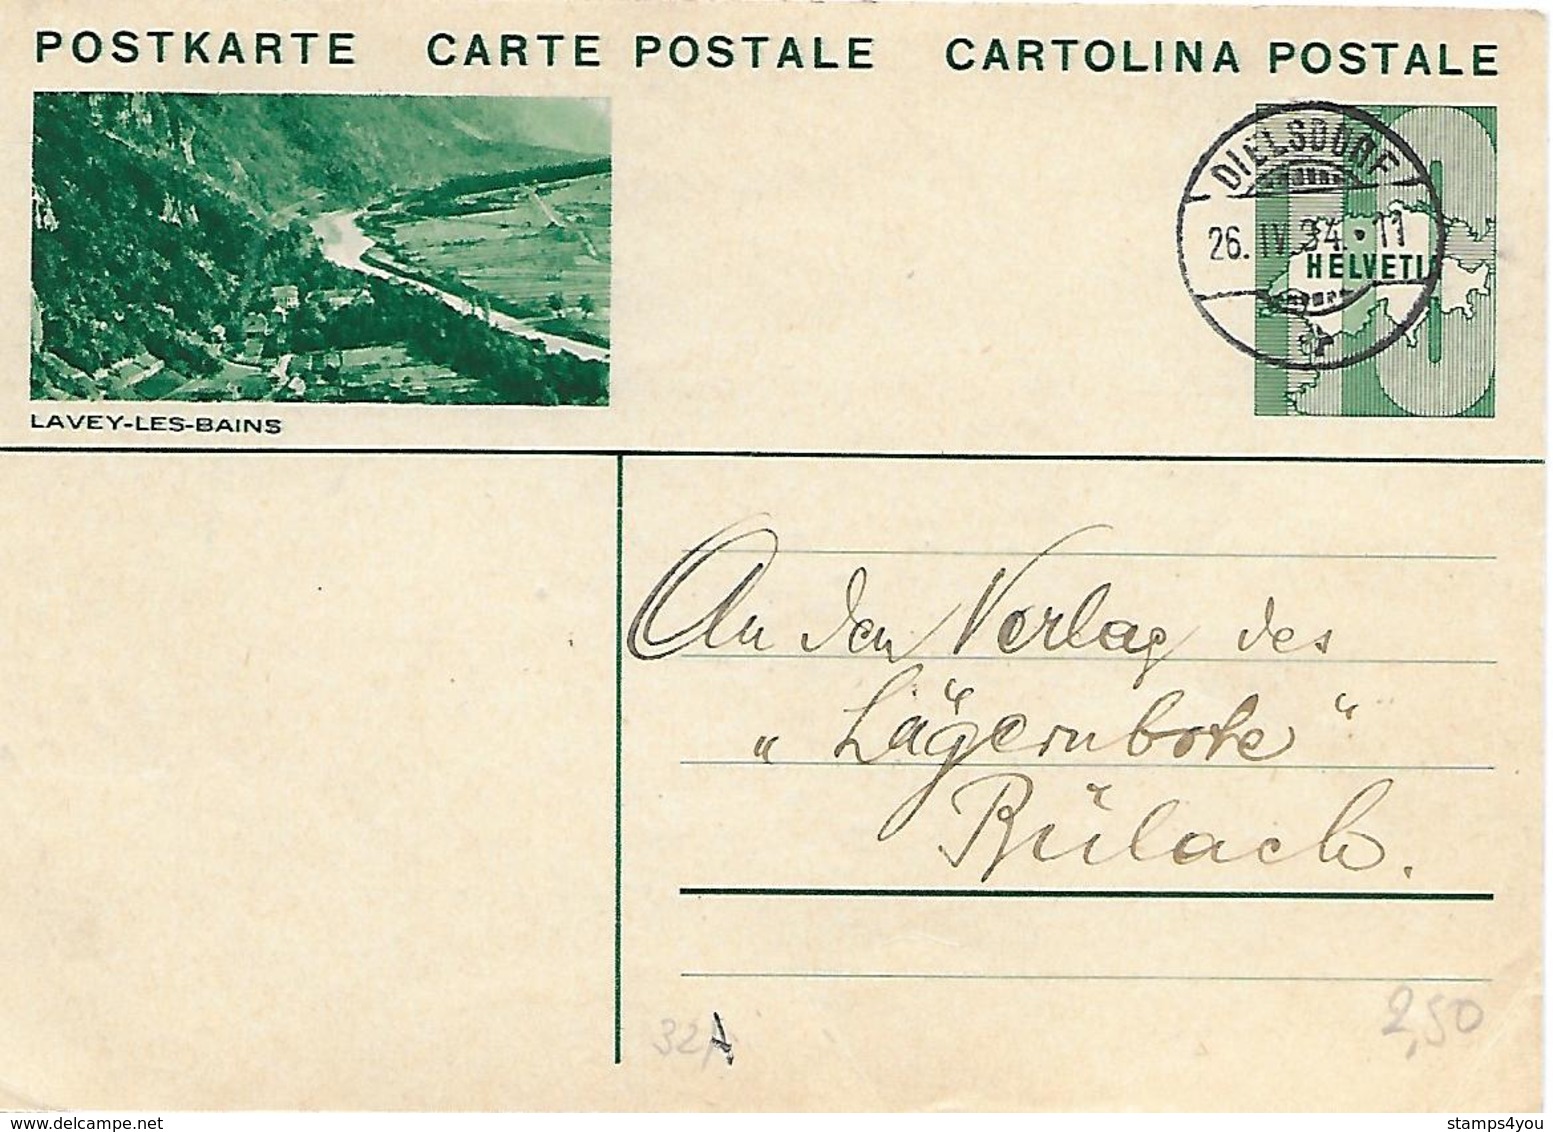 164 - 35 -  Entier Postal Avec Illustration "Lavey-les-bains" Superbe Cachet à Date Dielsdorf 1934 - Entiers Postaux